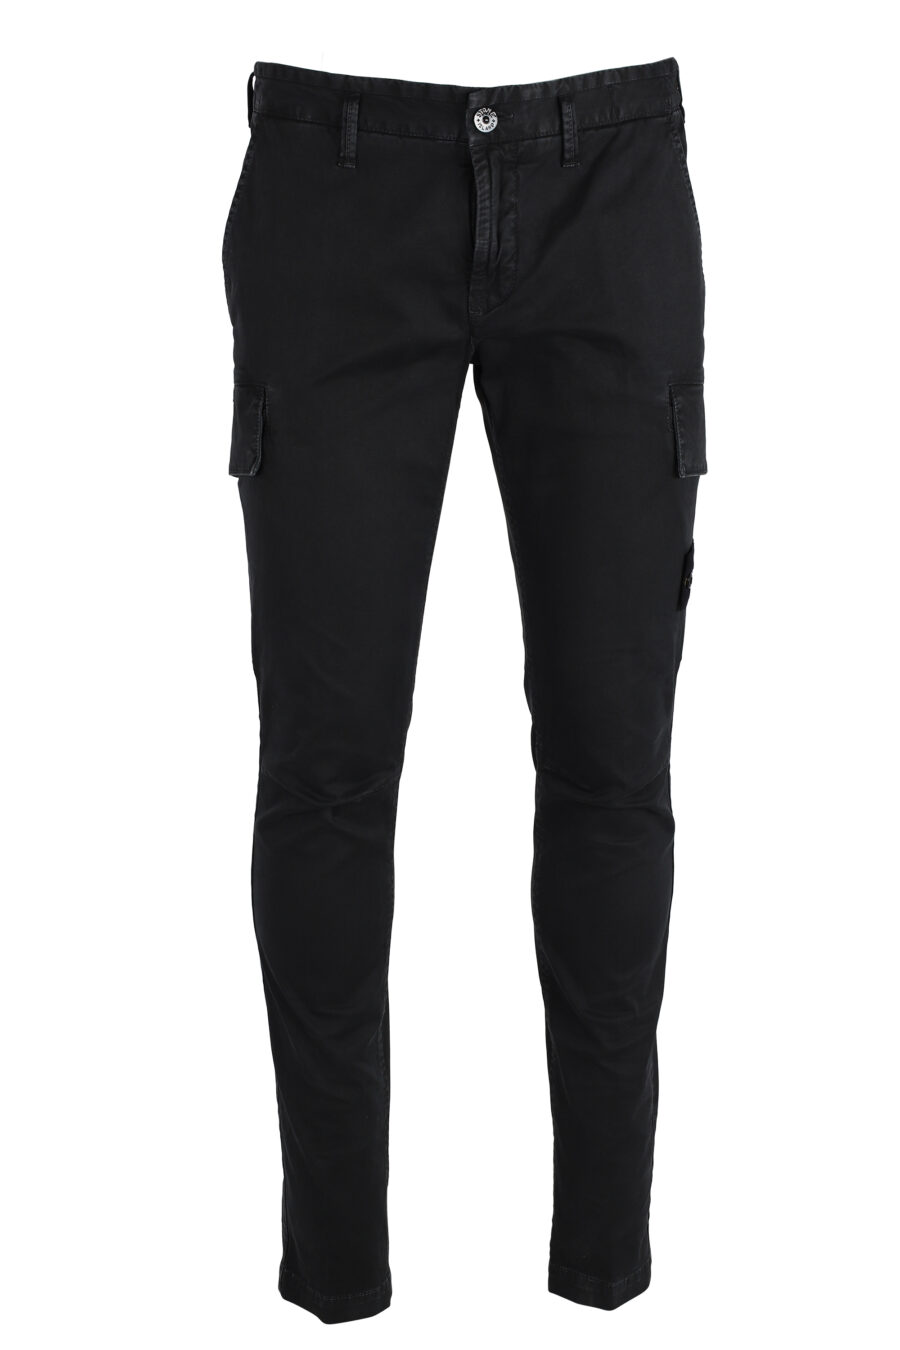 Pantalón negro con bolsillos laterales y parche - IMG 4794